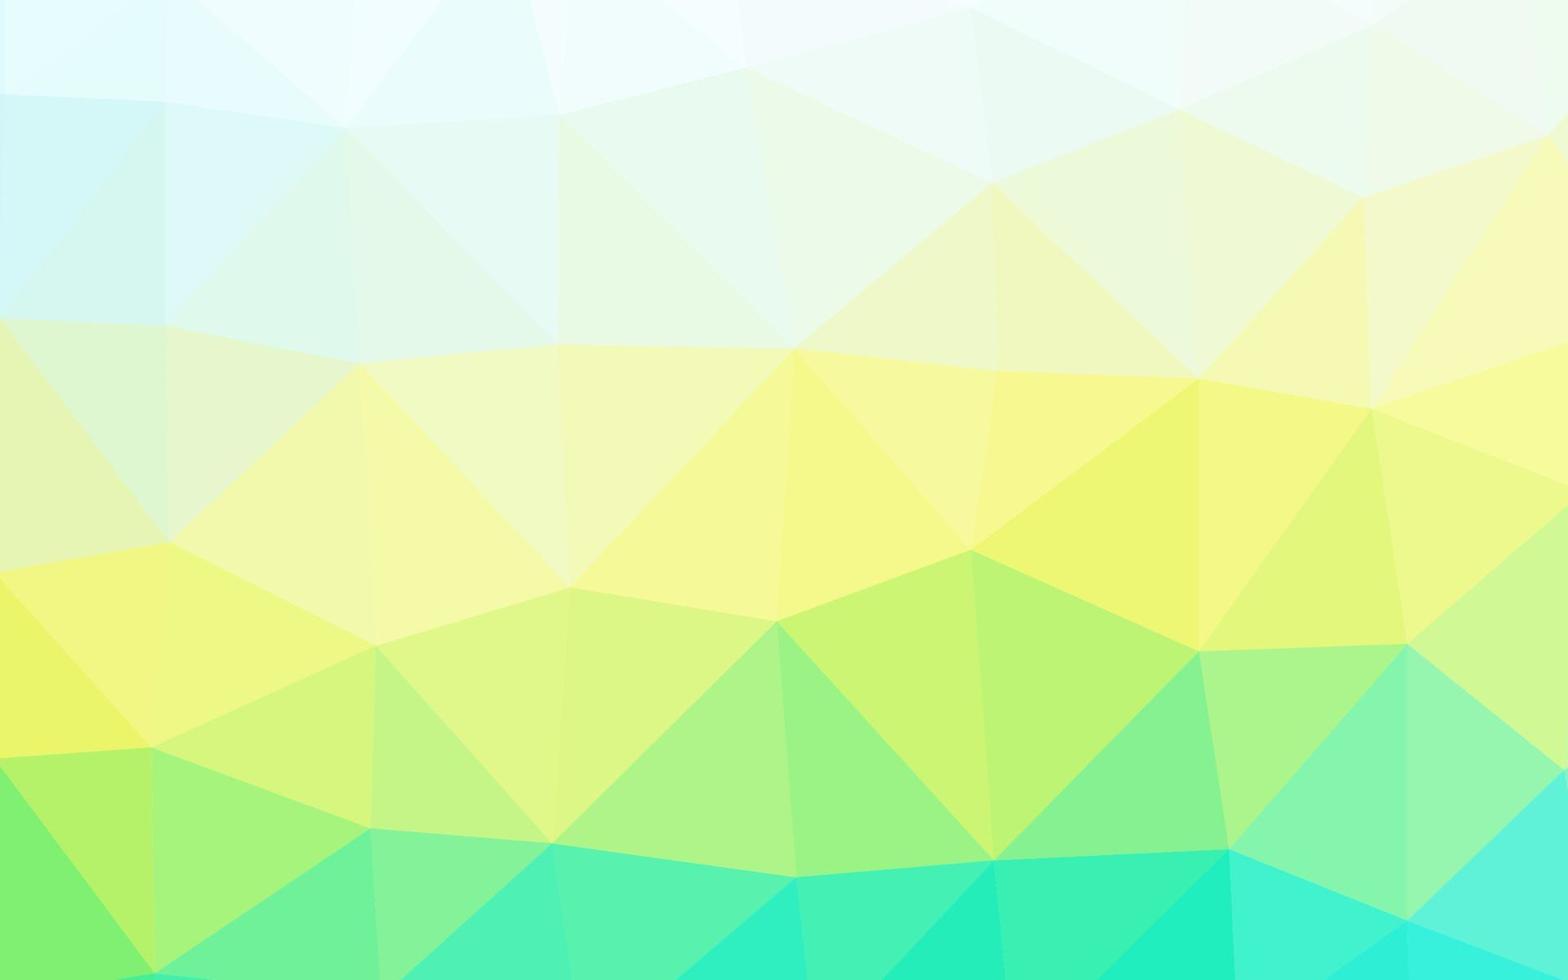 ljusblå, gul vektor lysande triangulär mall.